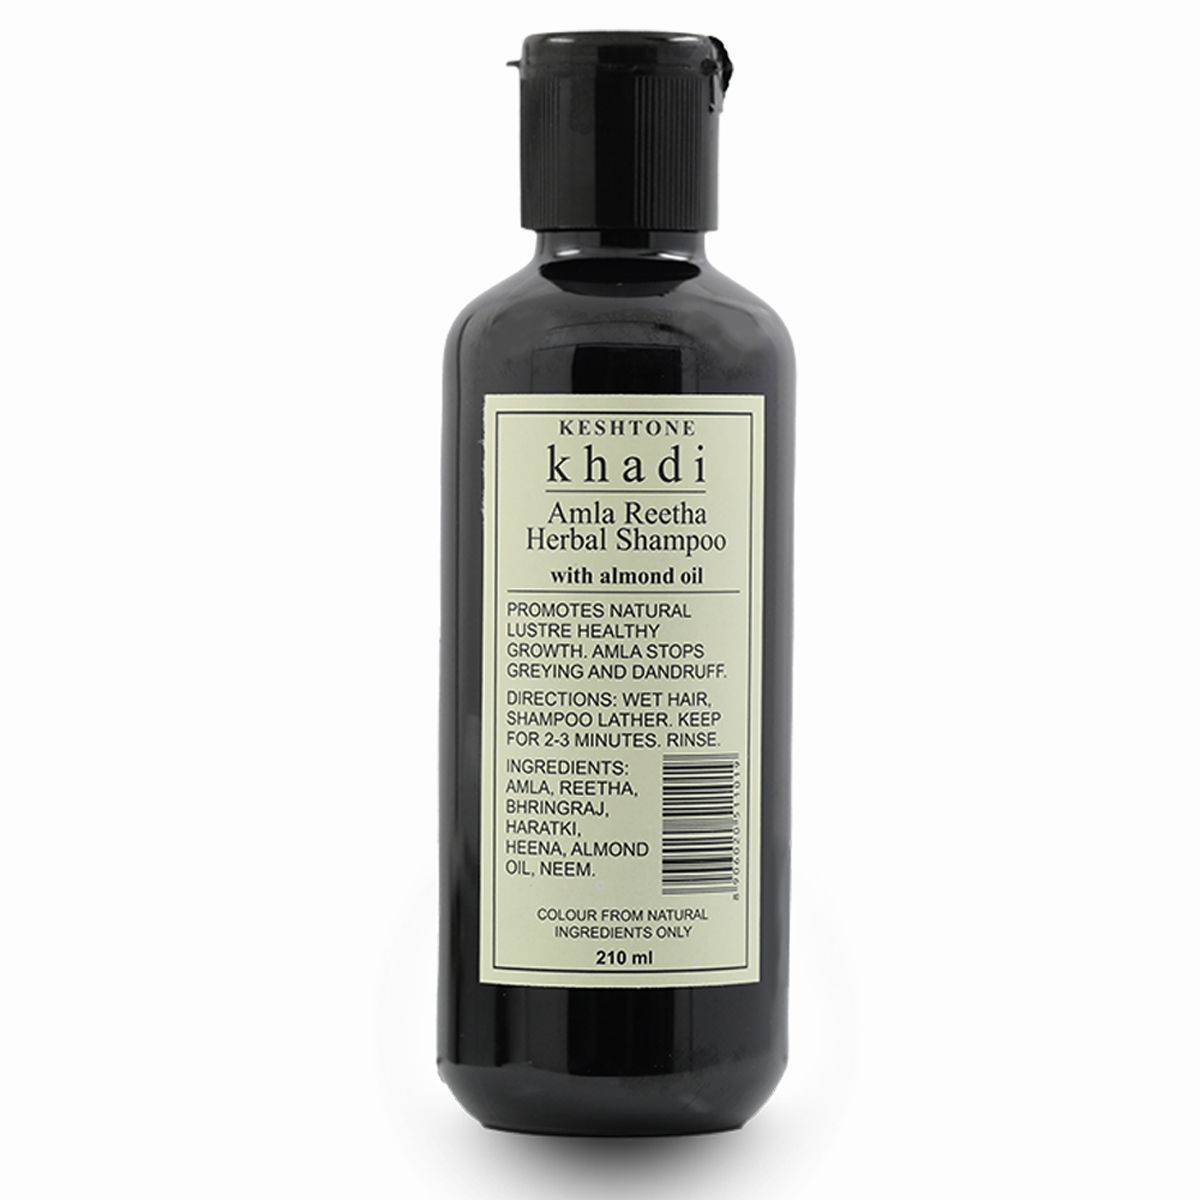 Khadi Amla Reetha Herbal Shampoo, 210 ml, Pack of 1 